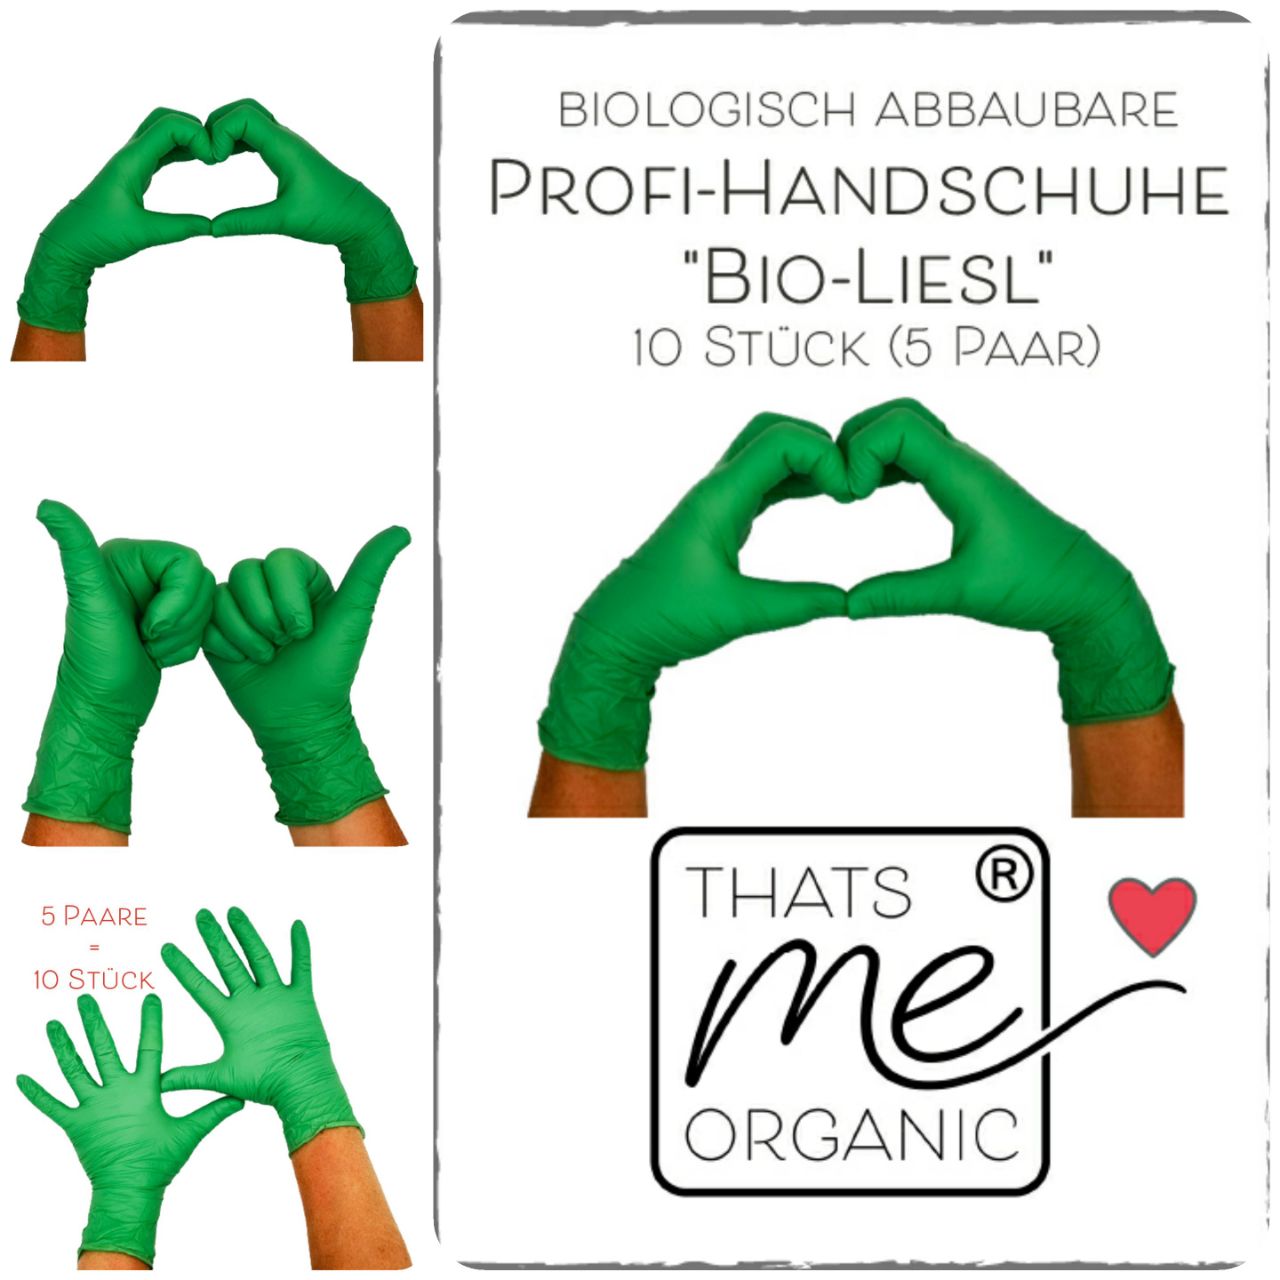 Profi-Handschuhe "Bio-Liesl" biologisch abbaubar 10 Stk. (5 Paar) puder- & latexfrei